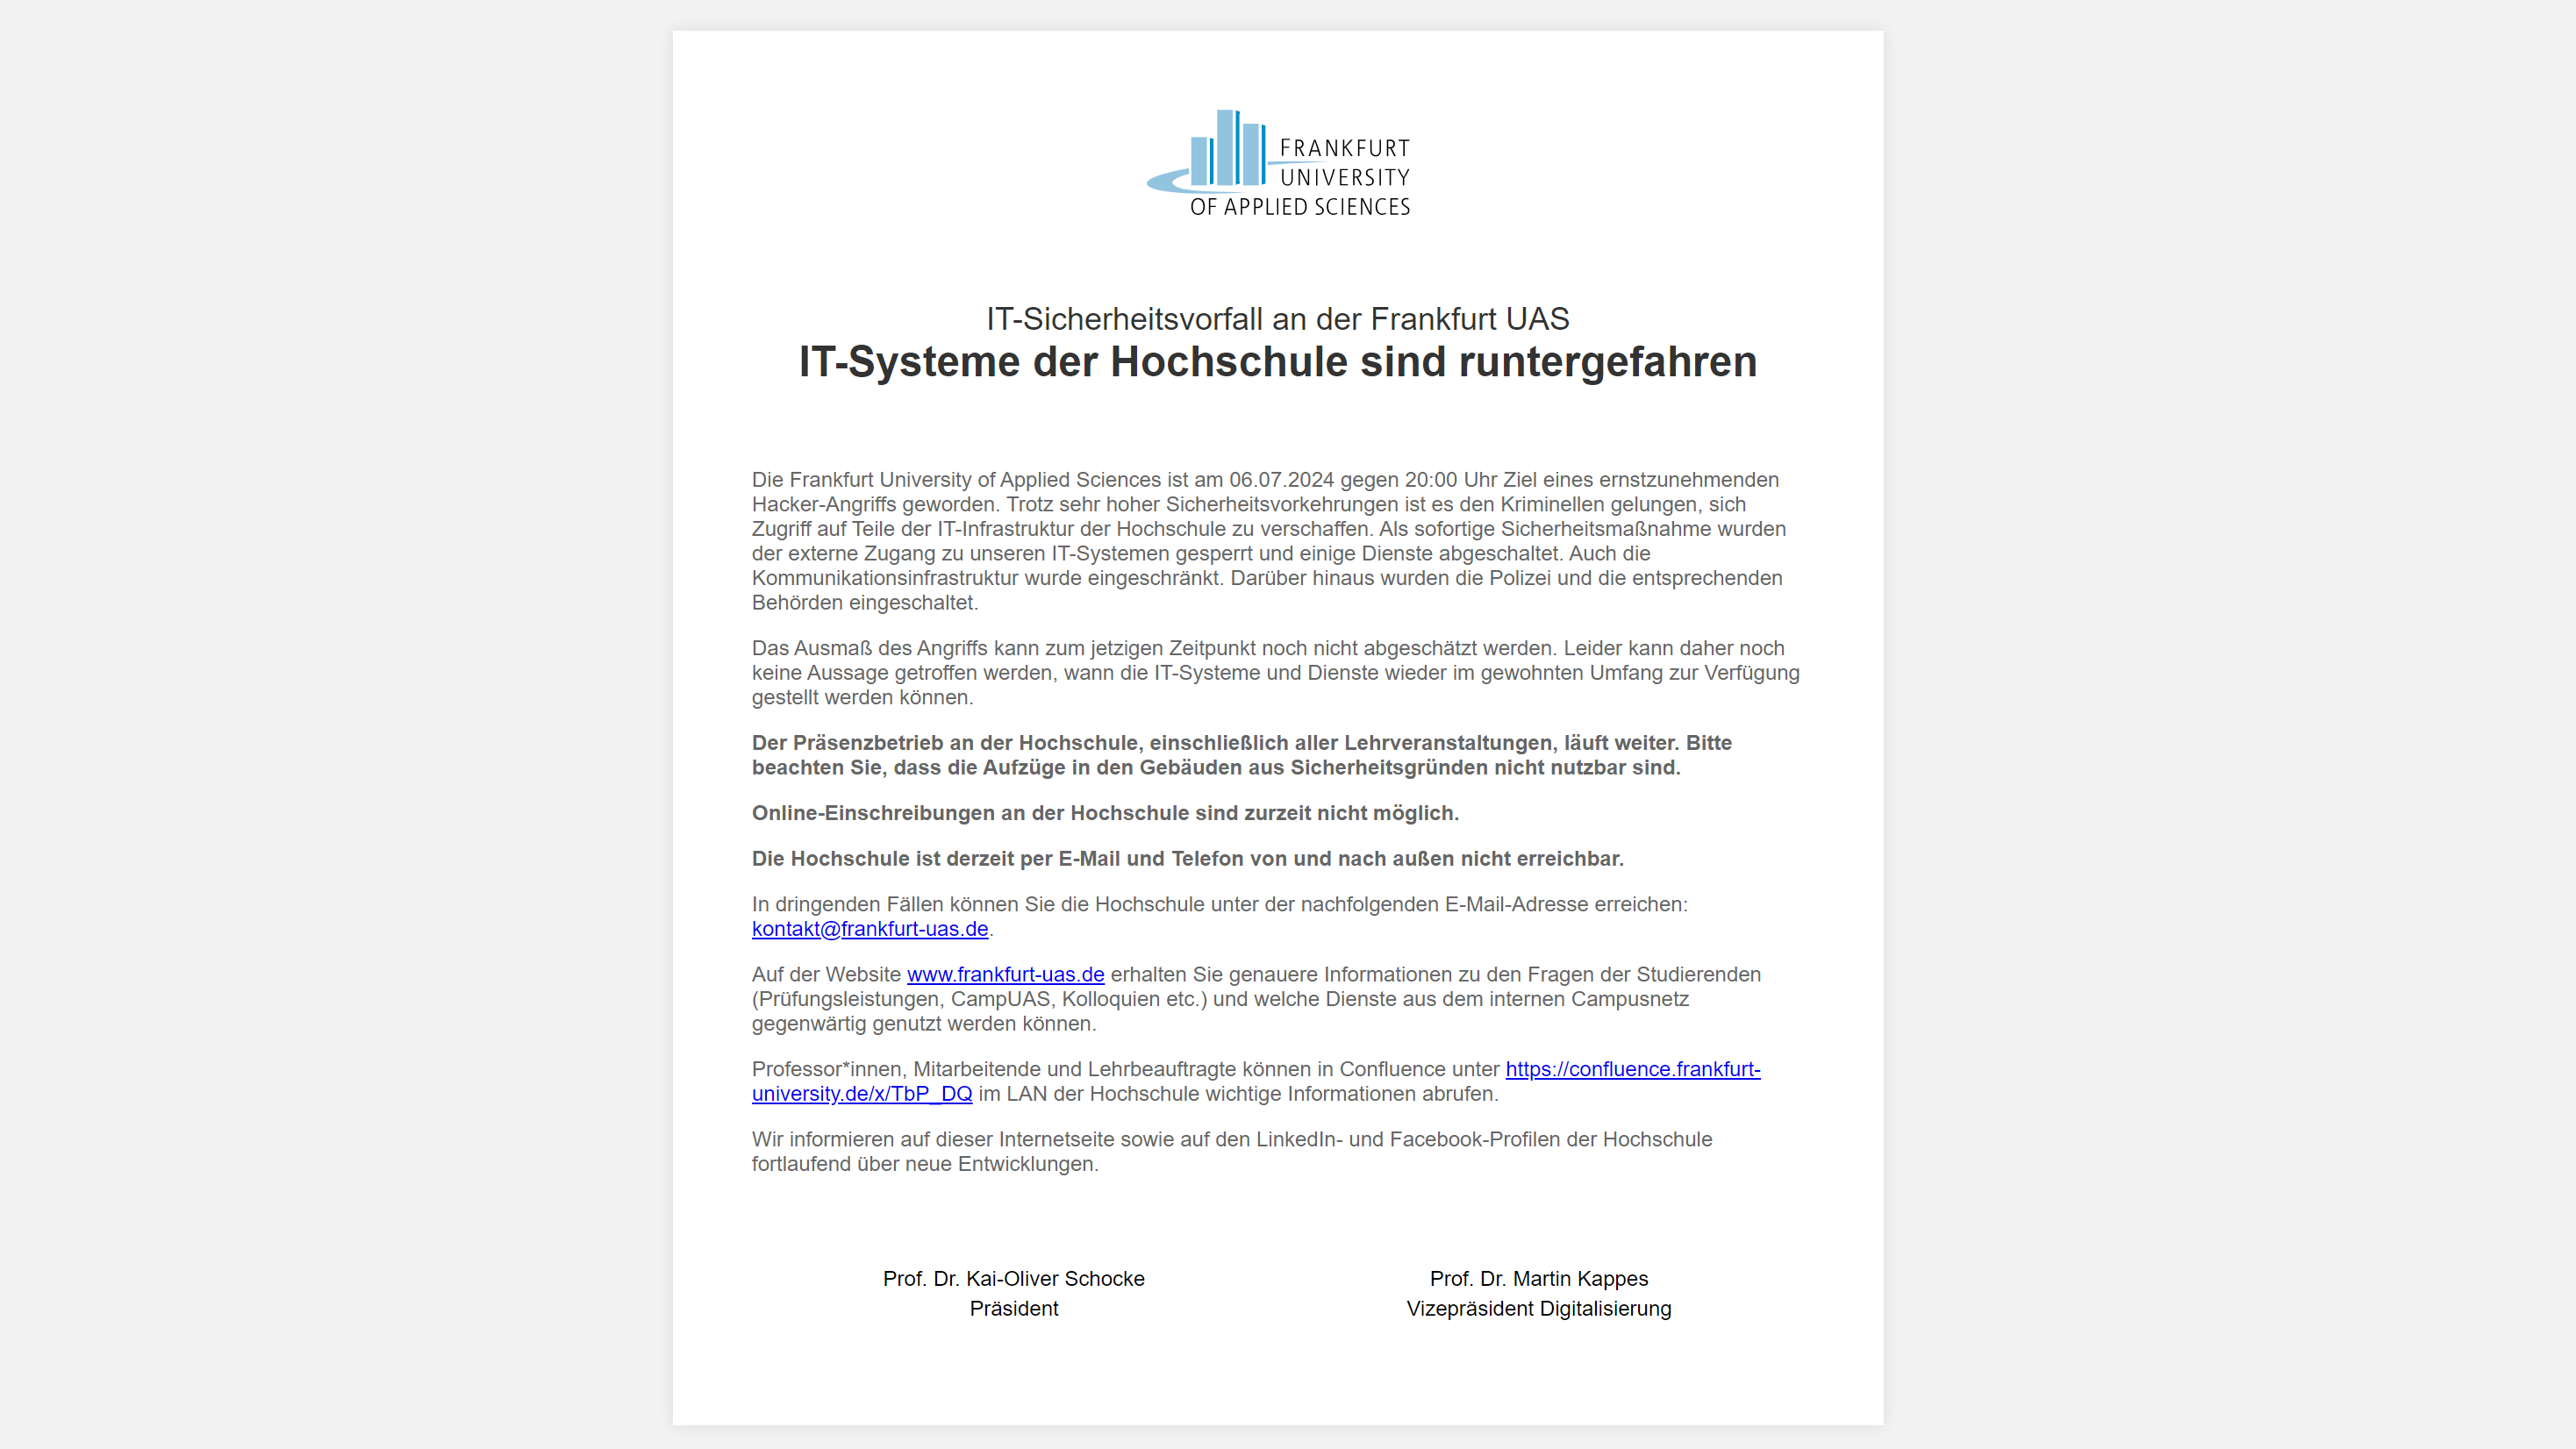 Frankfurt UAS nach Sicherheitsvorfall ohne E-Mail